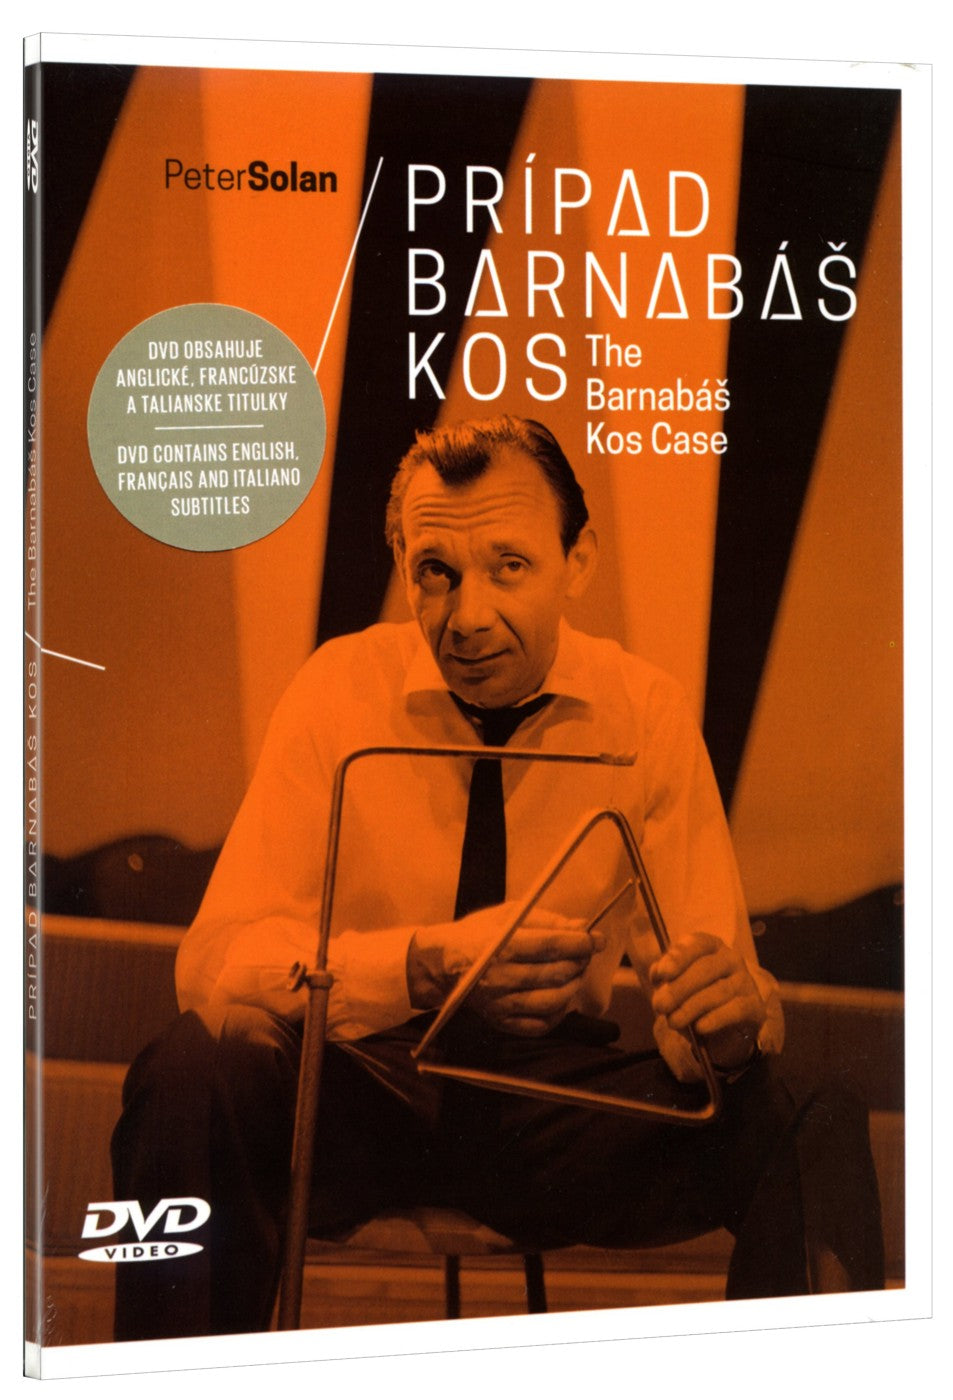 The Barnabas Kos Case / Pripad Barnabas Kos DVD